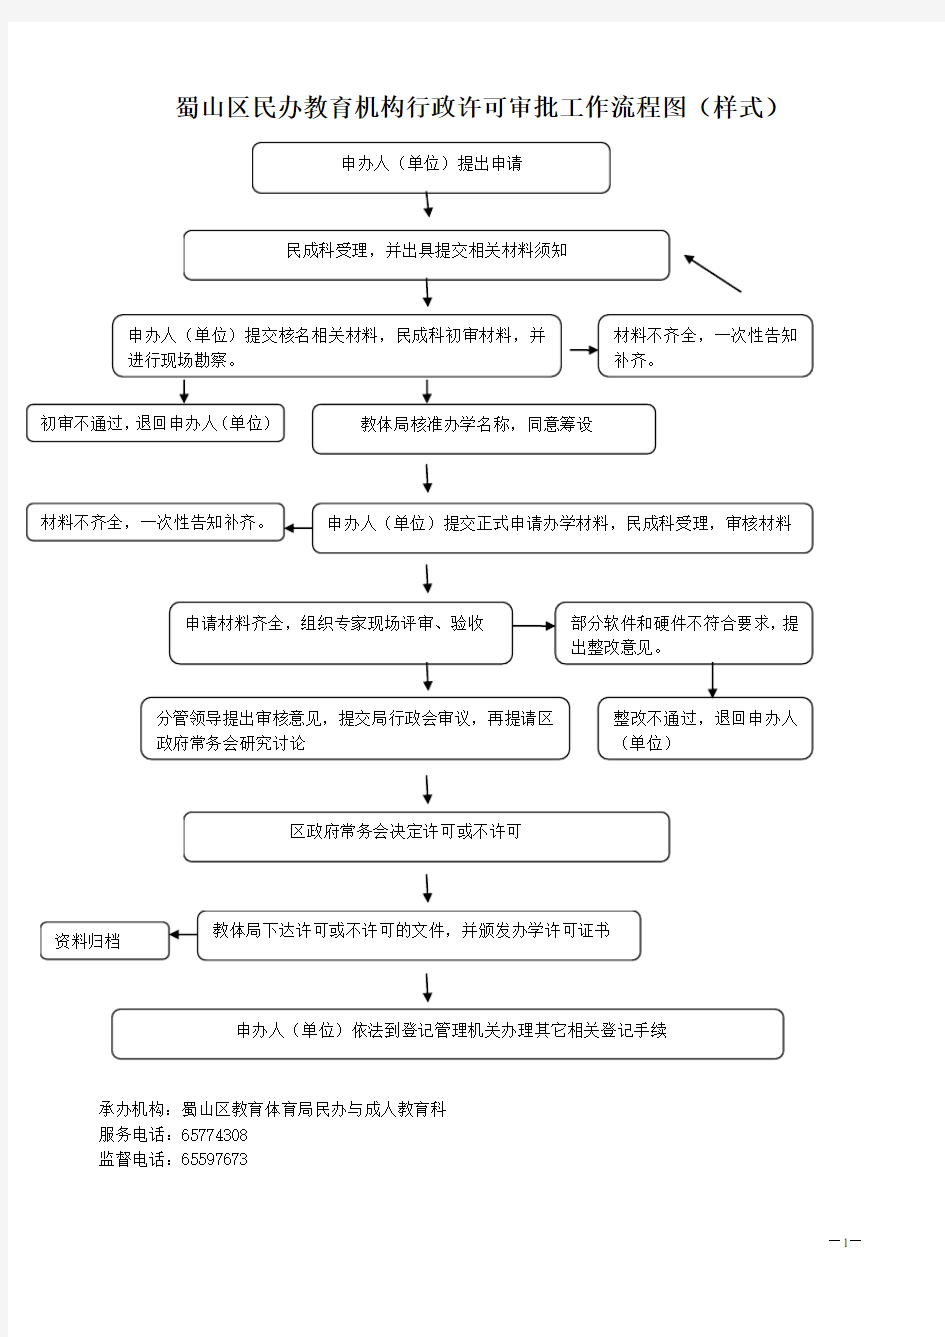 蜀山区民办教育机构行政许可审批工作流程图(样式)